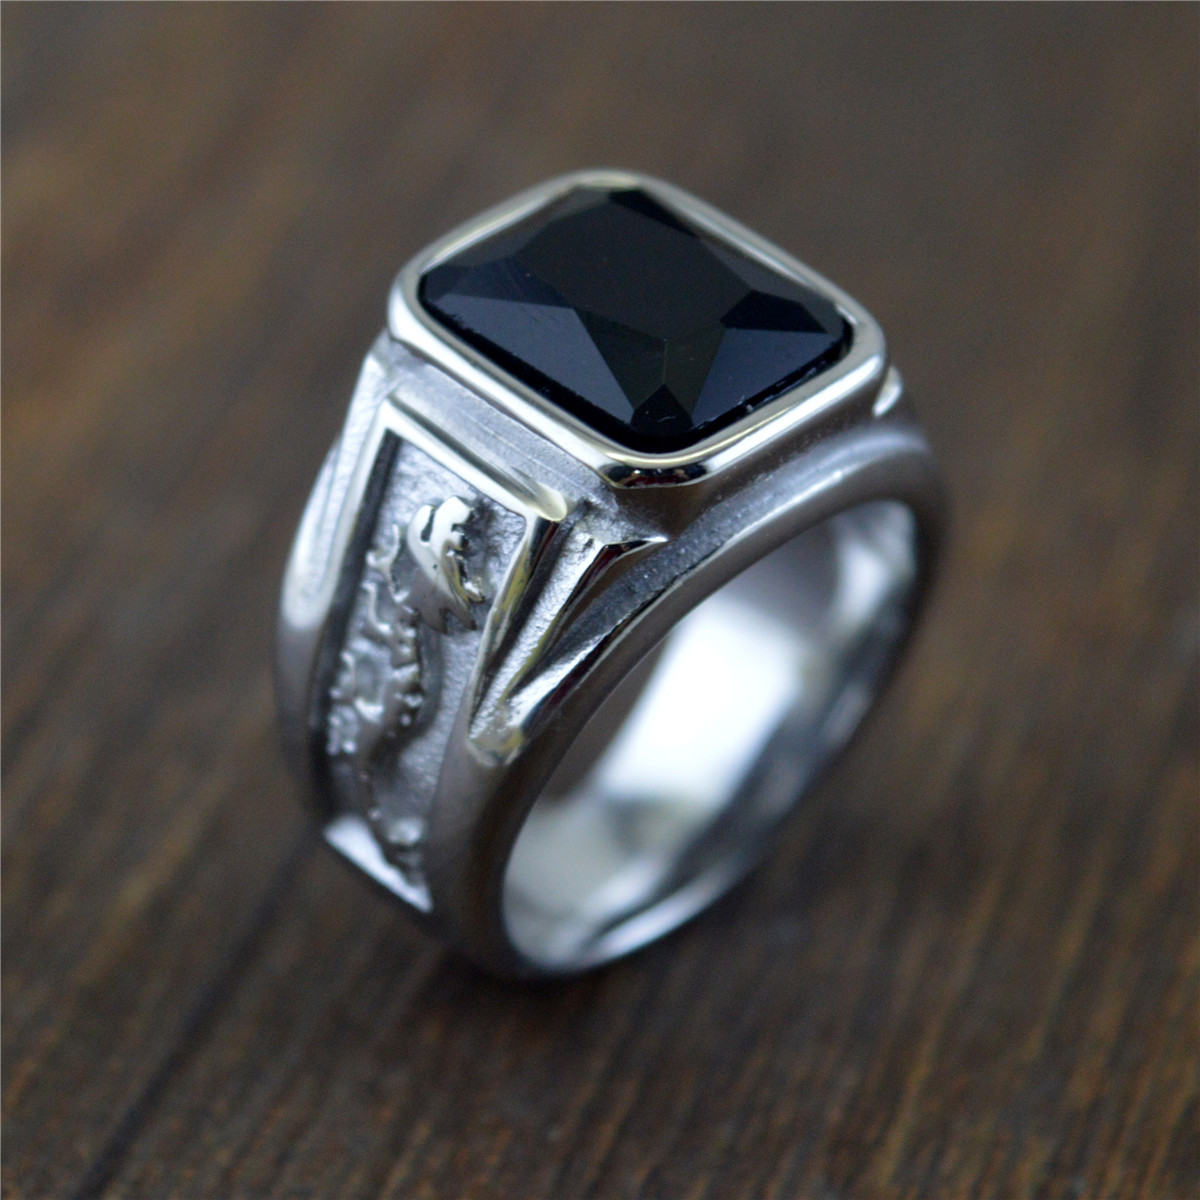 4:Steel black diamond